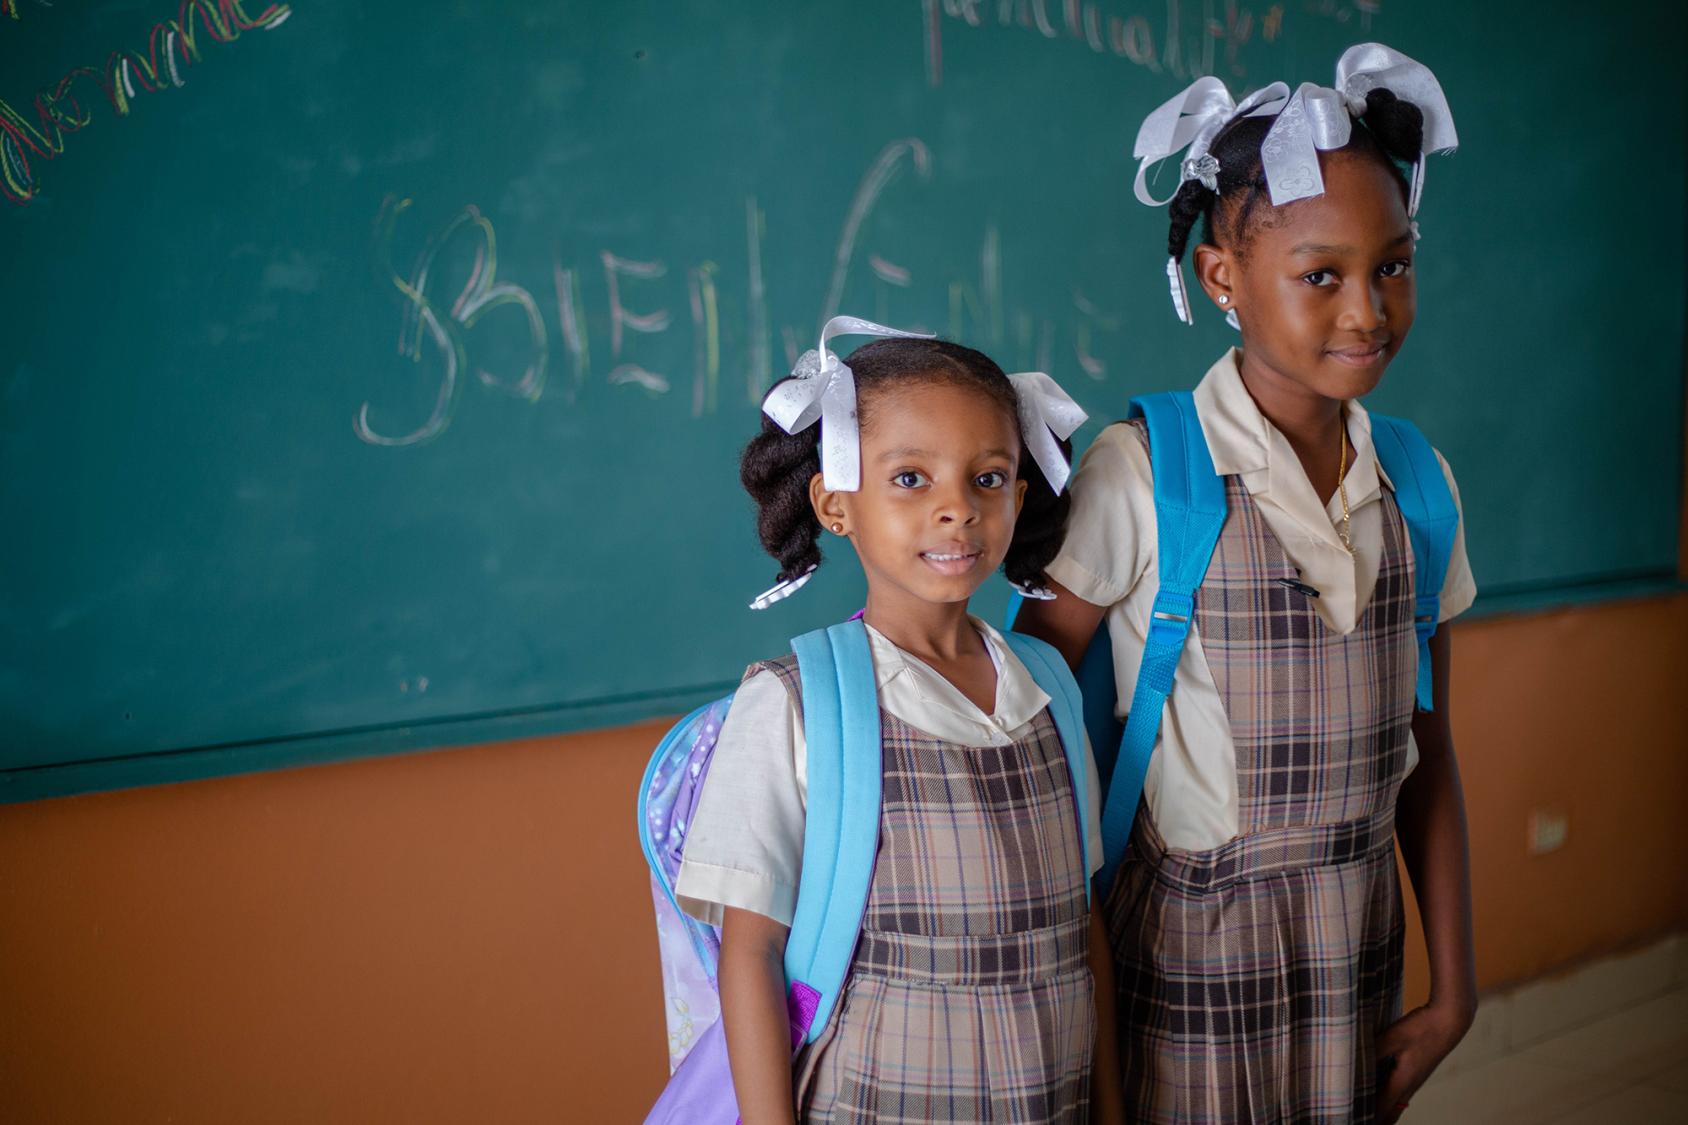 Dos niñas con mochila y uniforme escolar se sitúan frente a una pizarra.